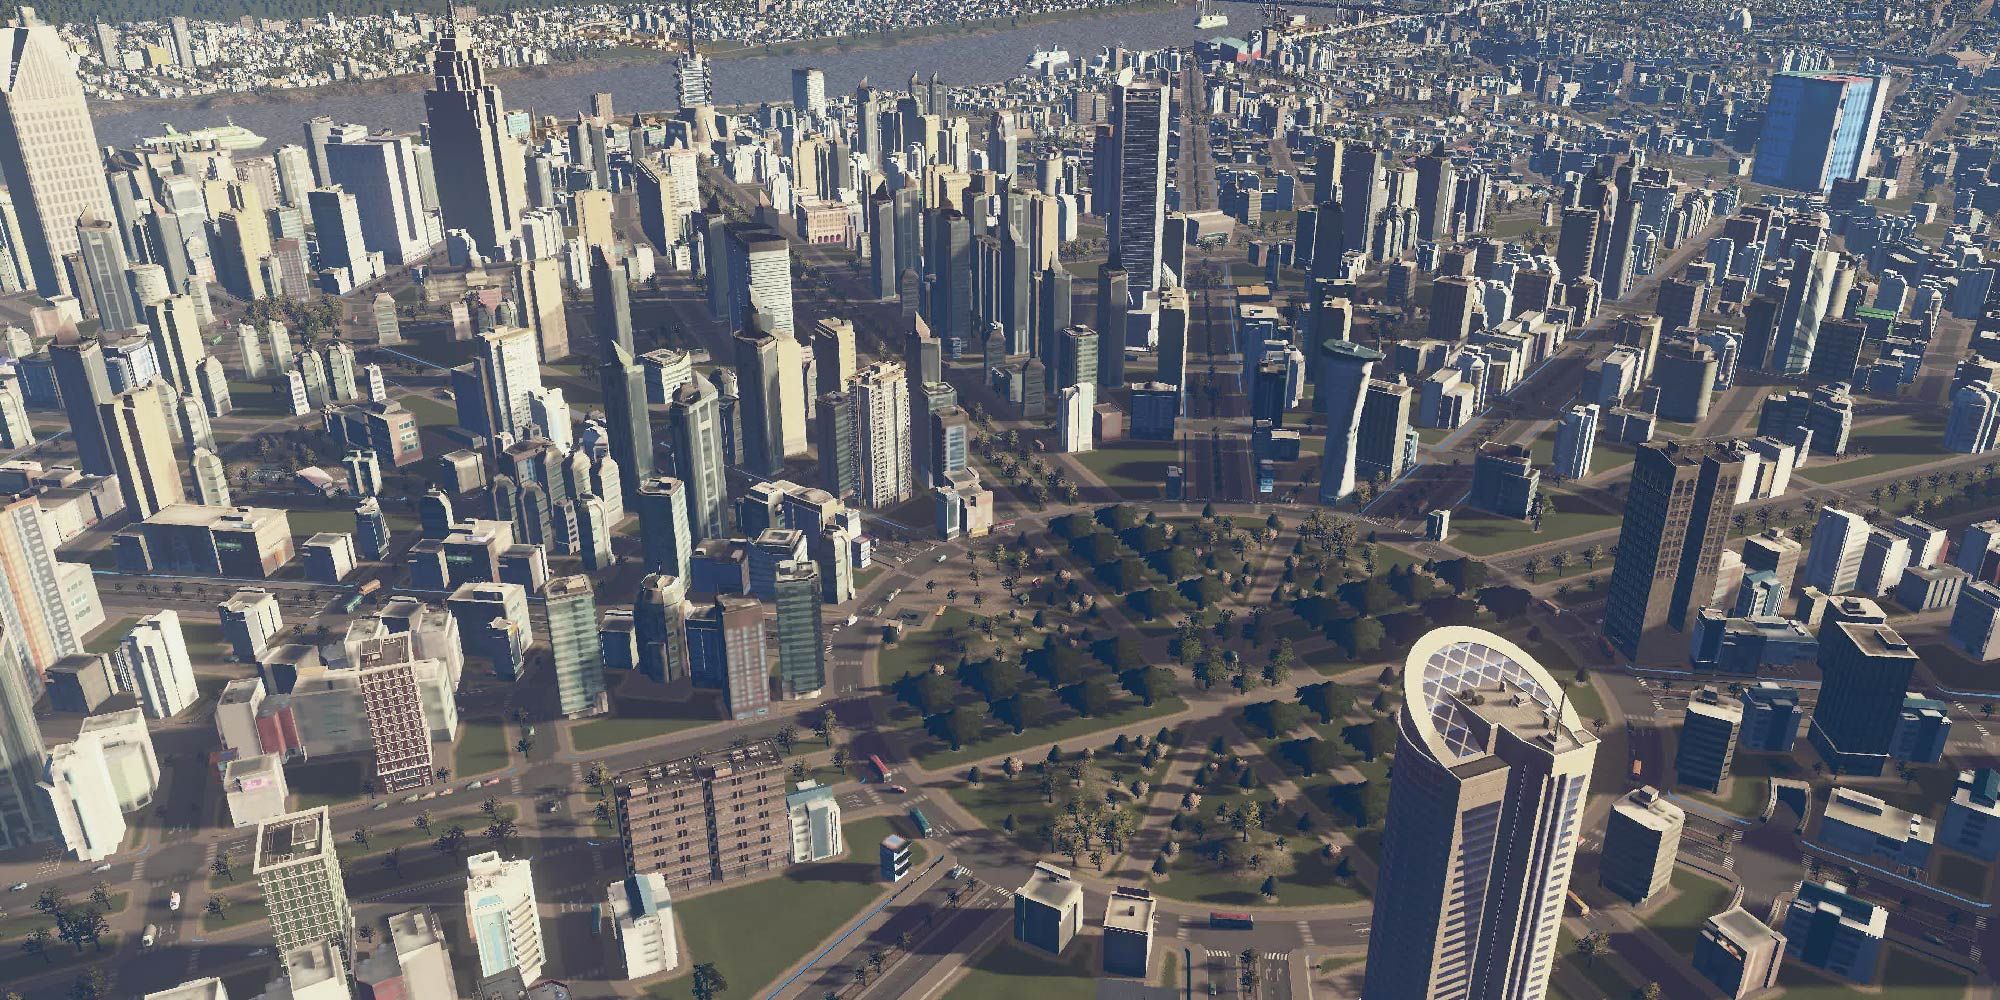 A bustling metropolis in Cities: Skylines.